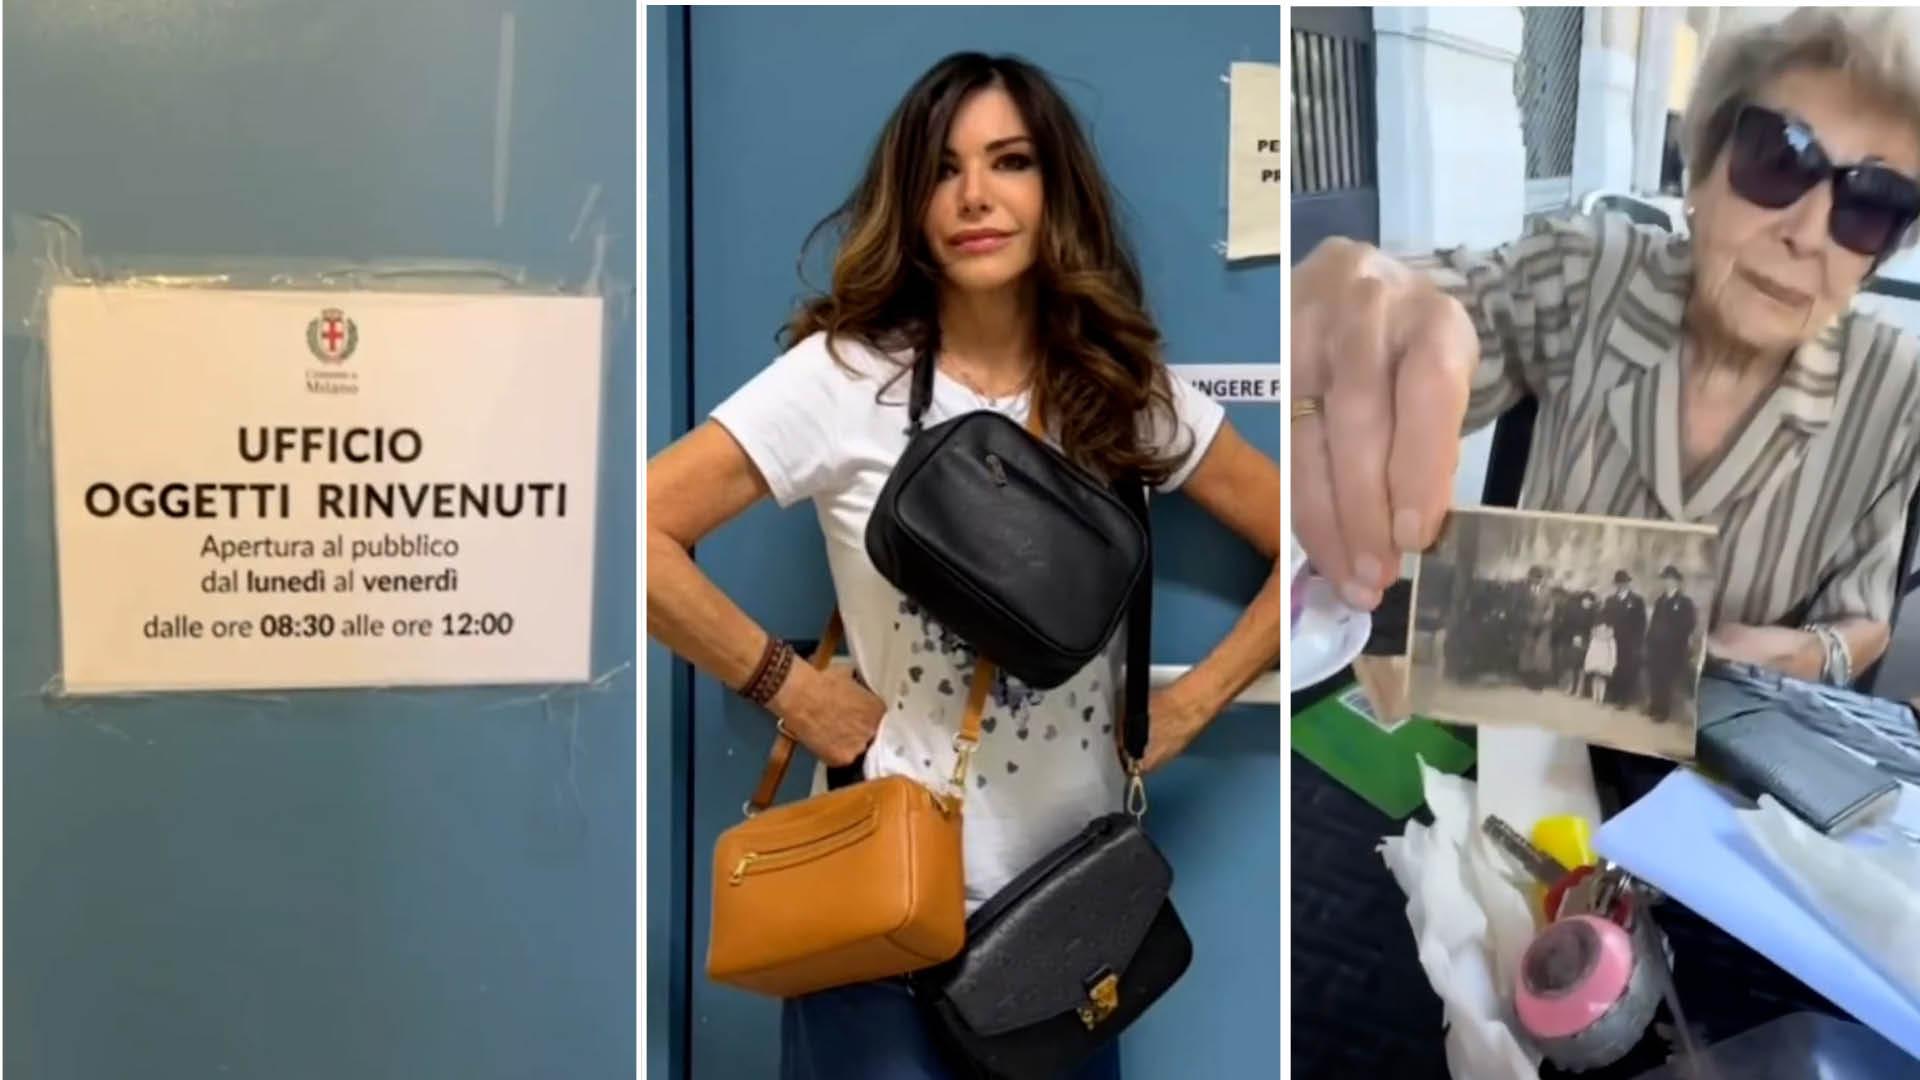 Emanuela Folliero ritrova la borsa rubata alla madre sul metrò all’ufficio oggetti rinvenuti